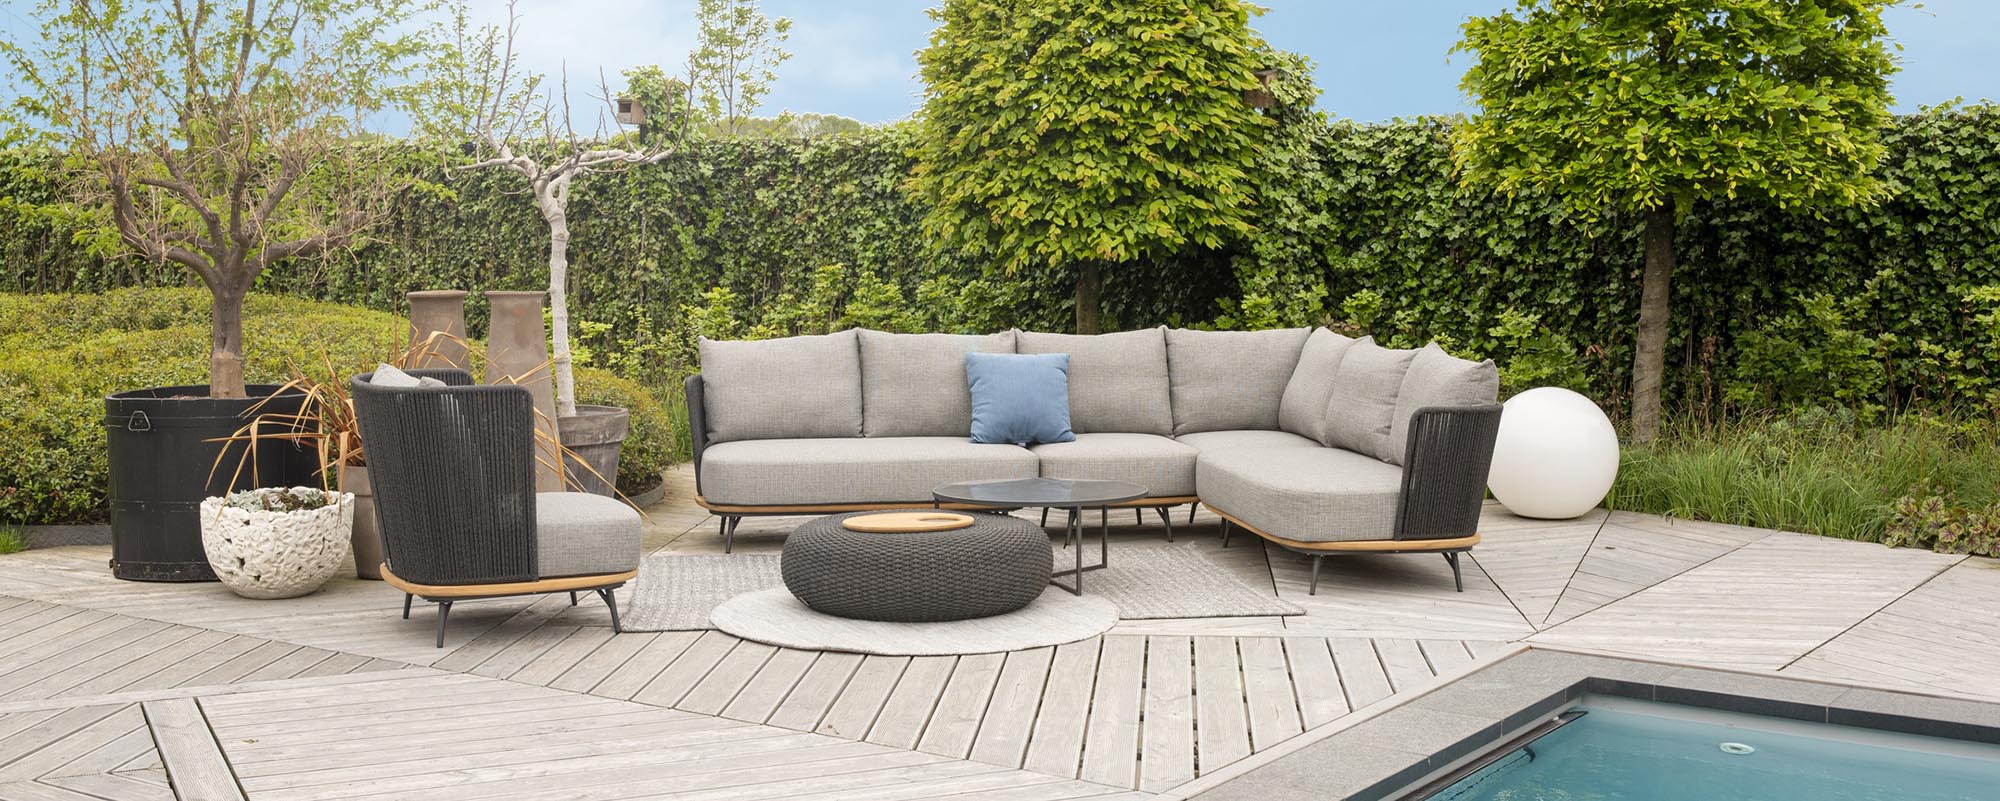 Lounge Superschöne Gartenmöbel Sofa-Module Positano Lounge | Garten